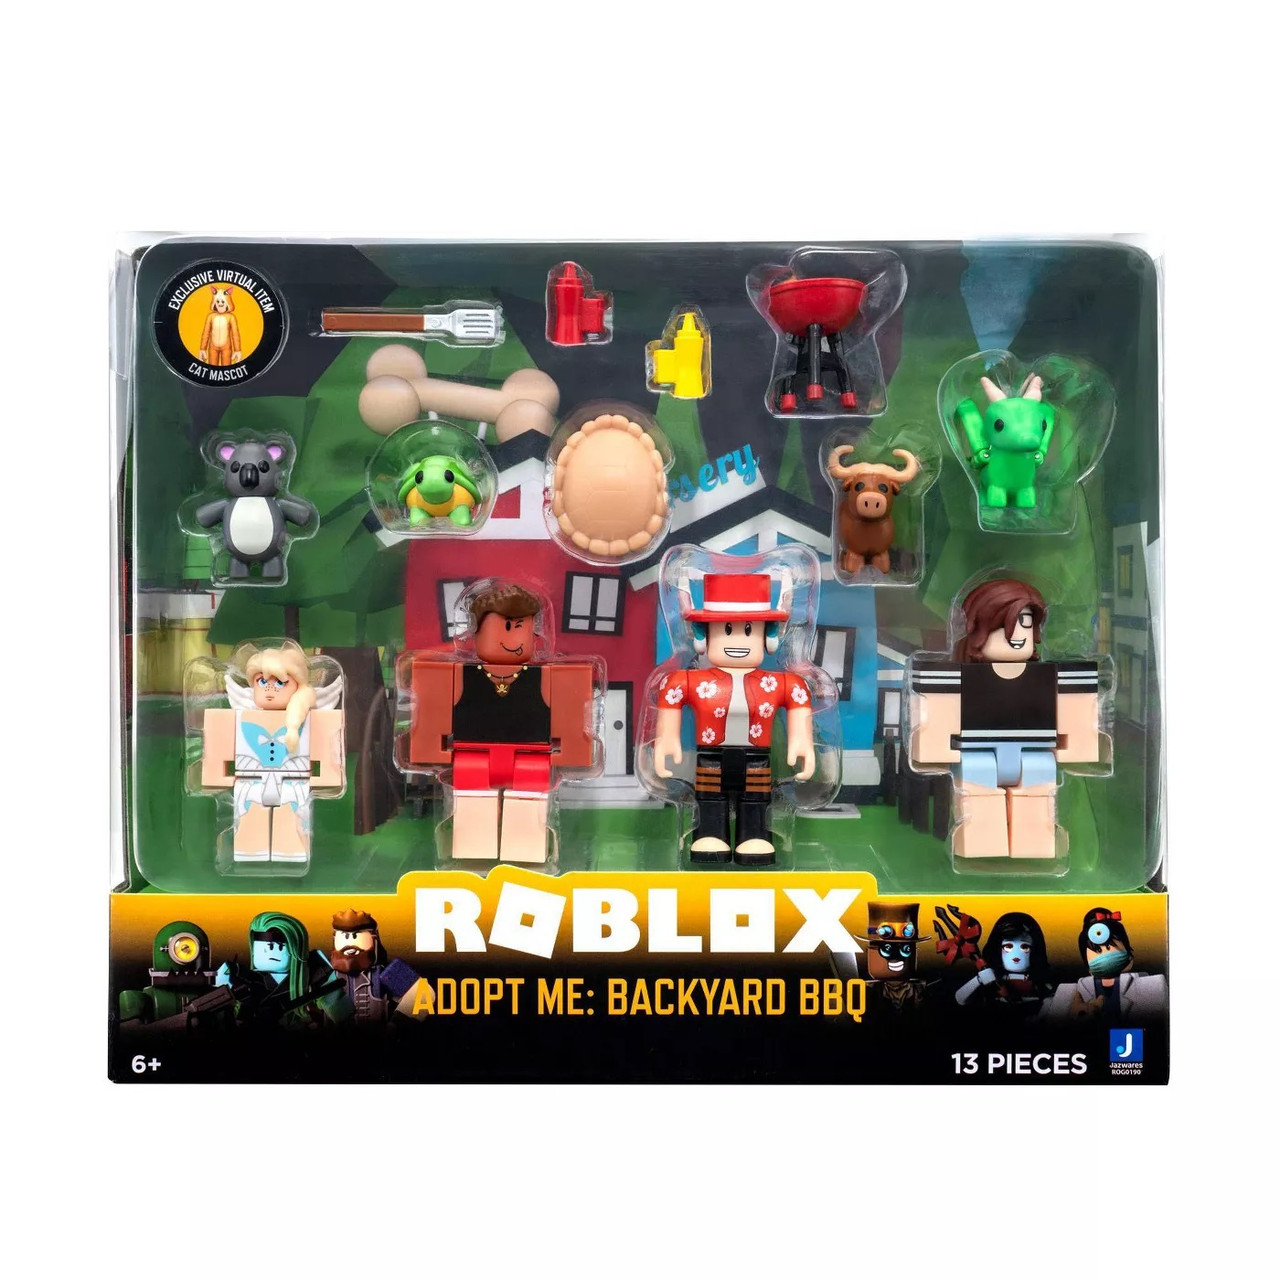 Compre Roblox - Pack Com 4 Figuras - Adopt Me: Backyard Bbq aqui